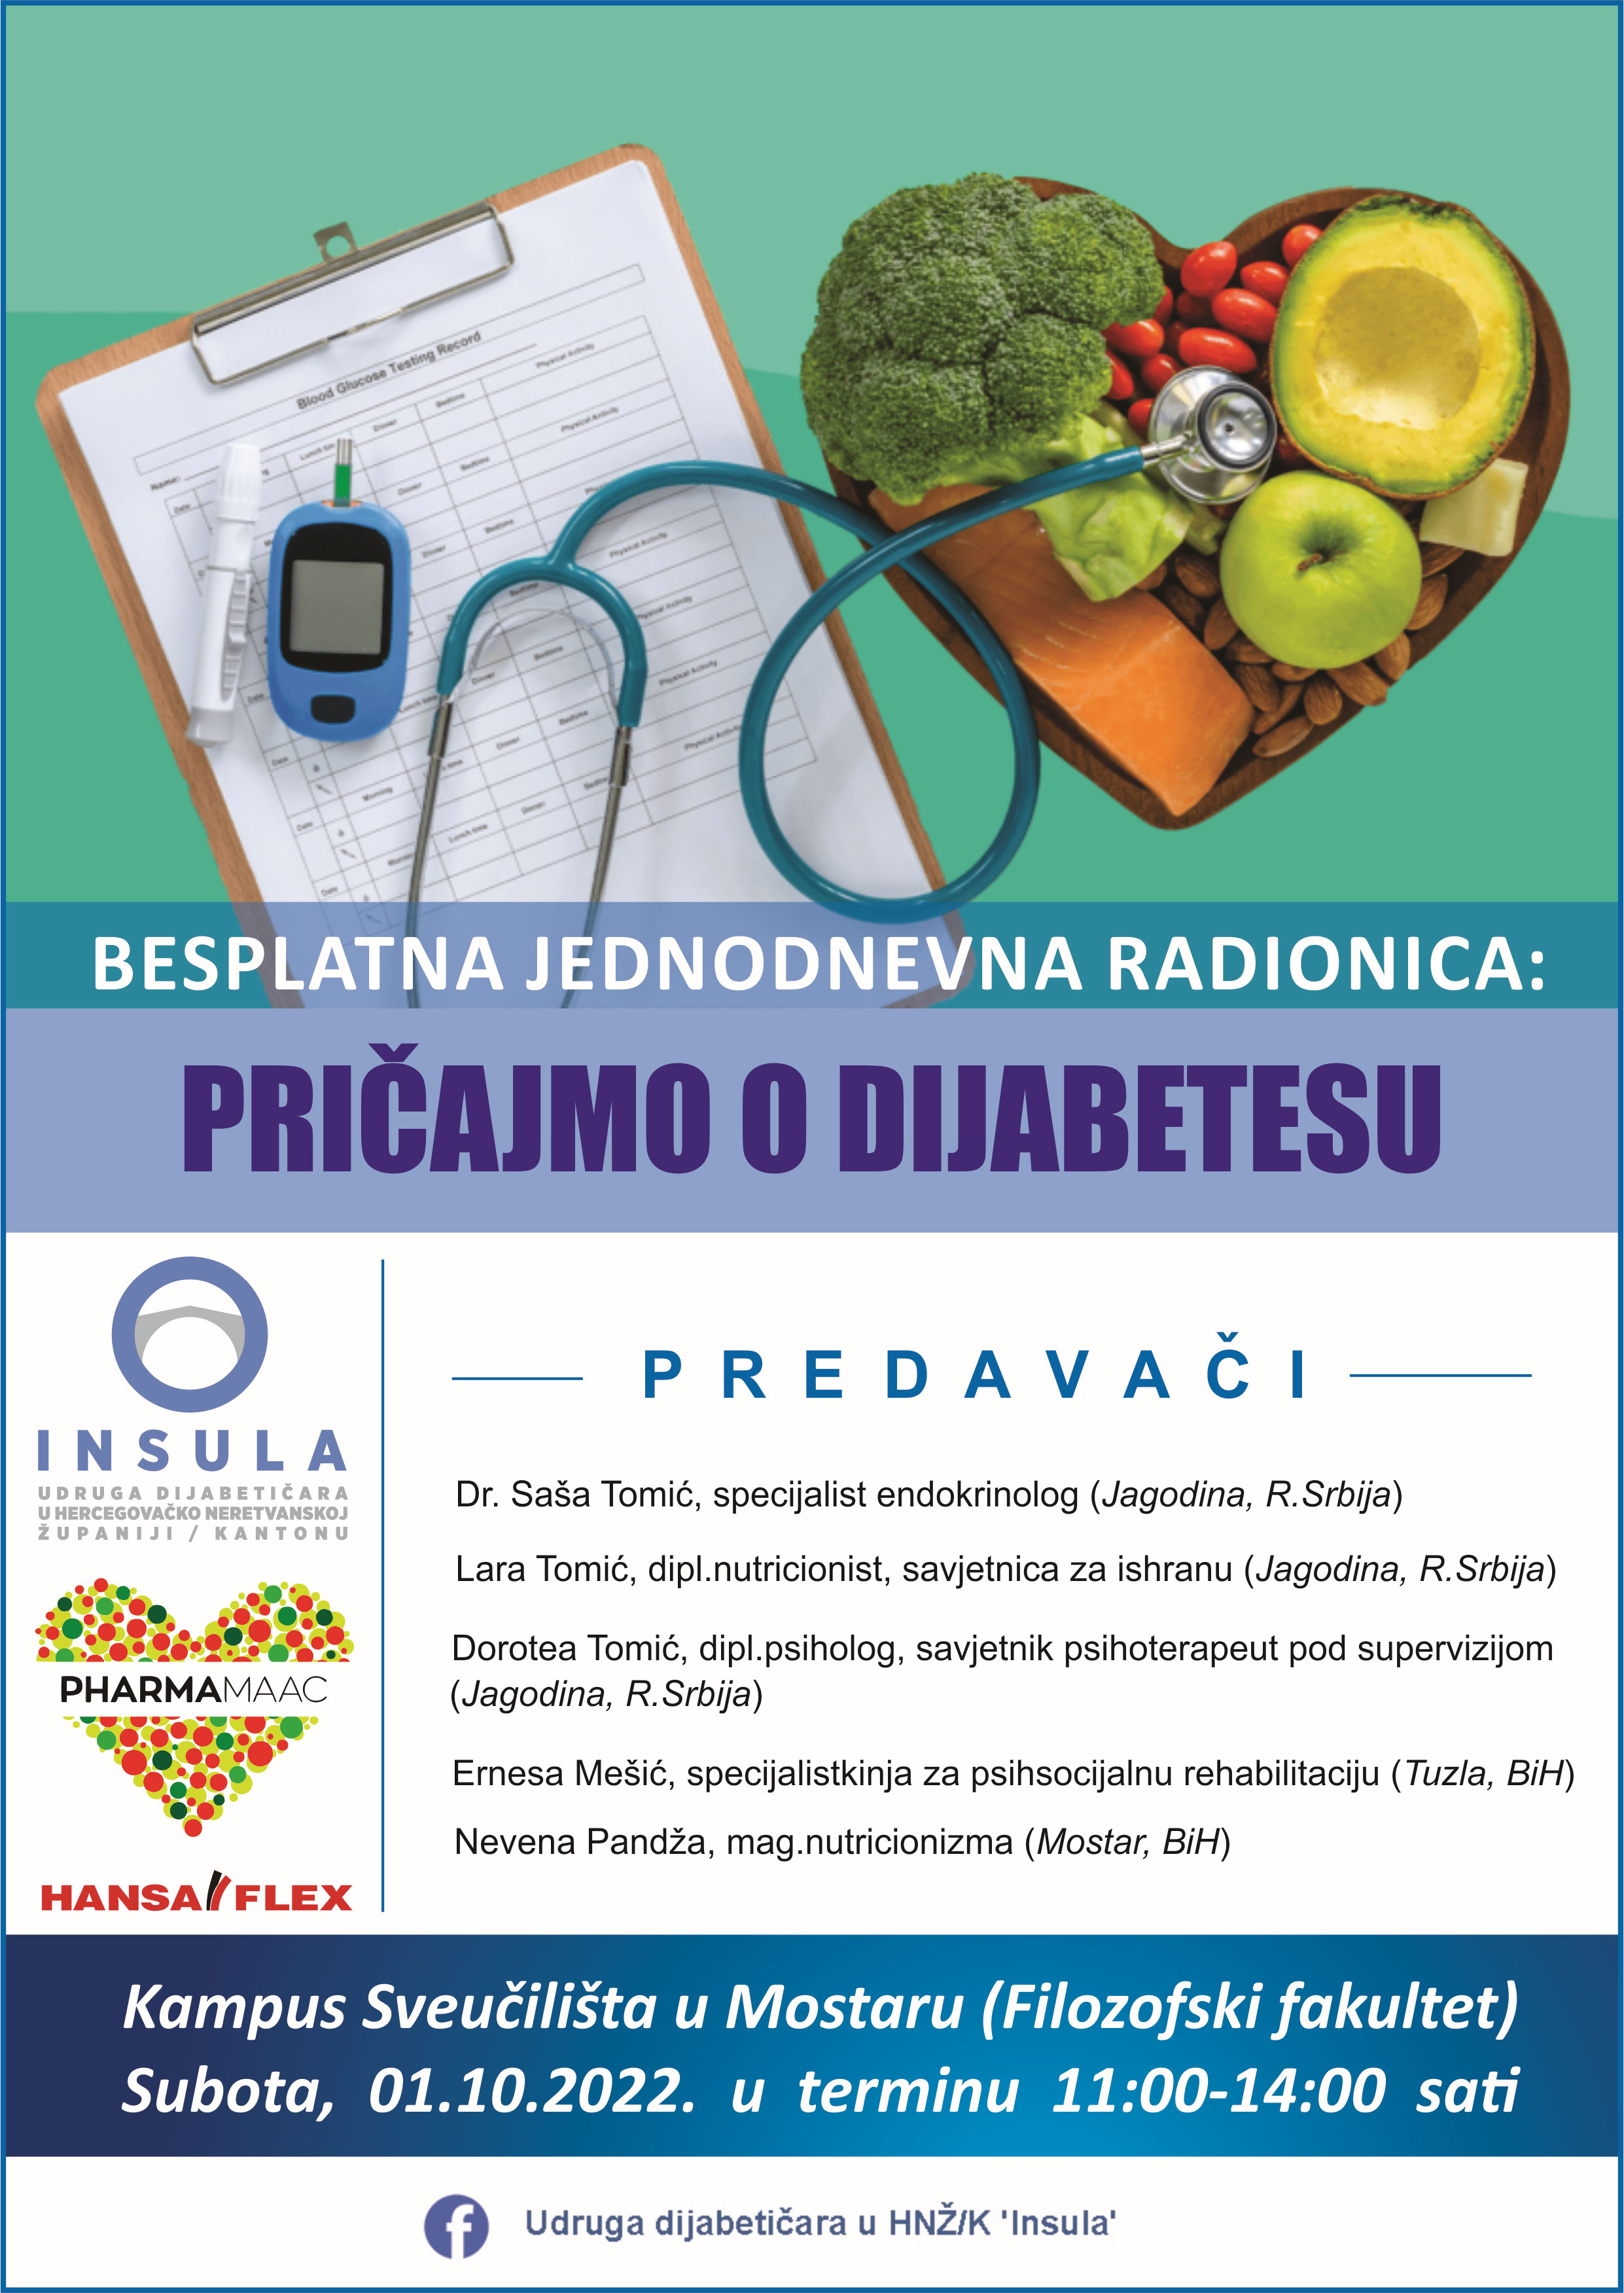 Radionica "Pričajmo o dijabetesu" u Mostaru